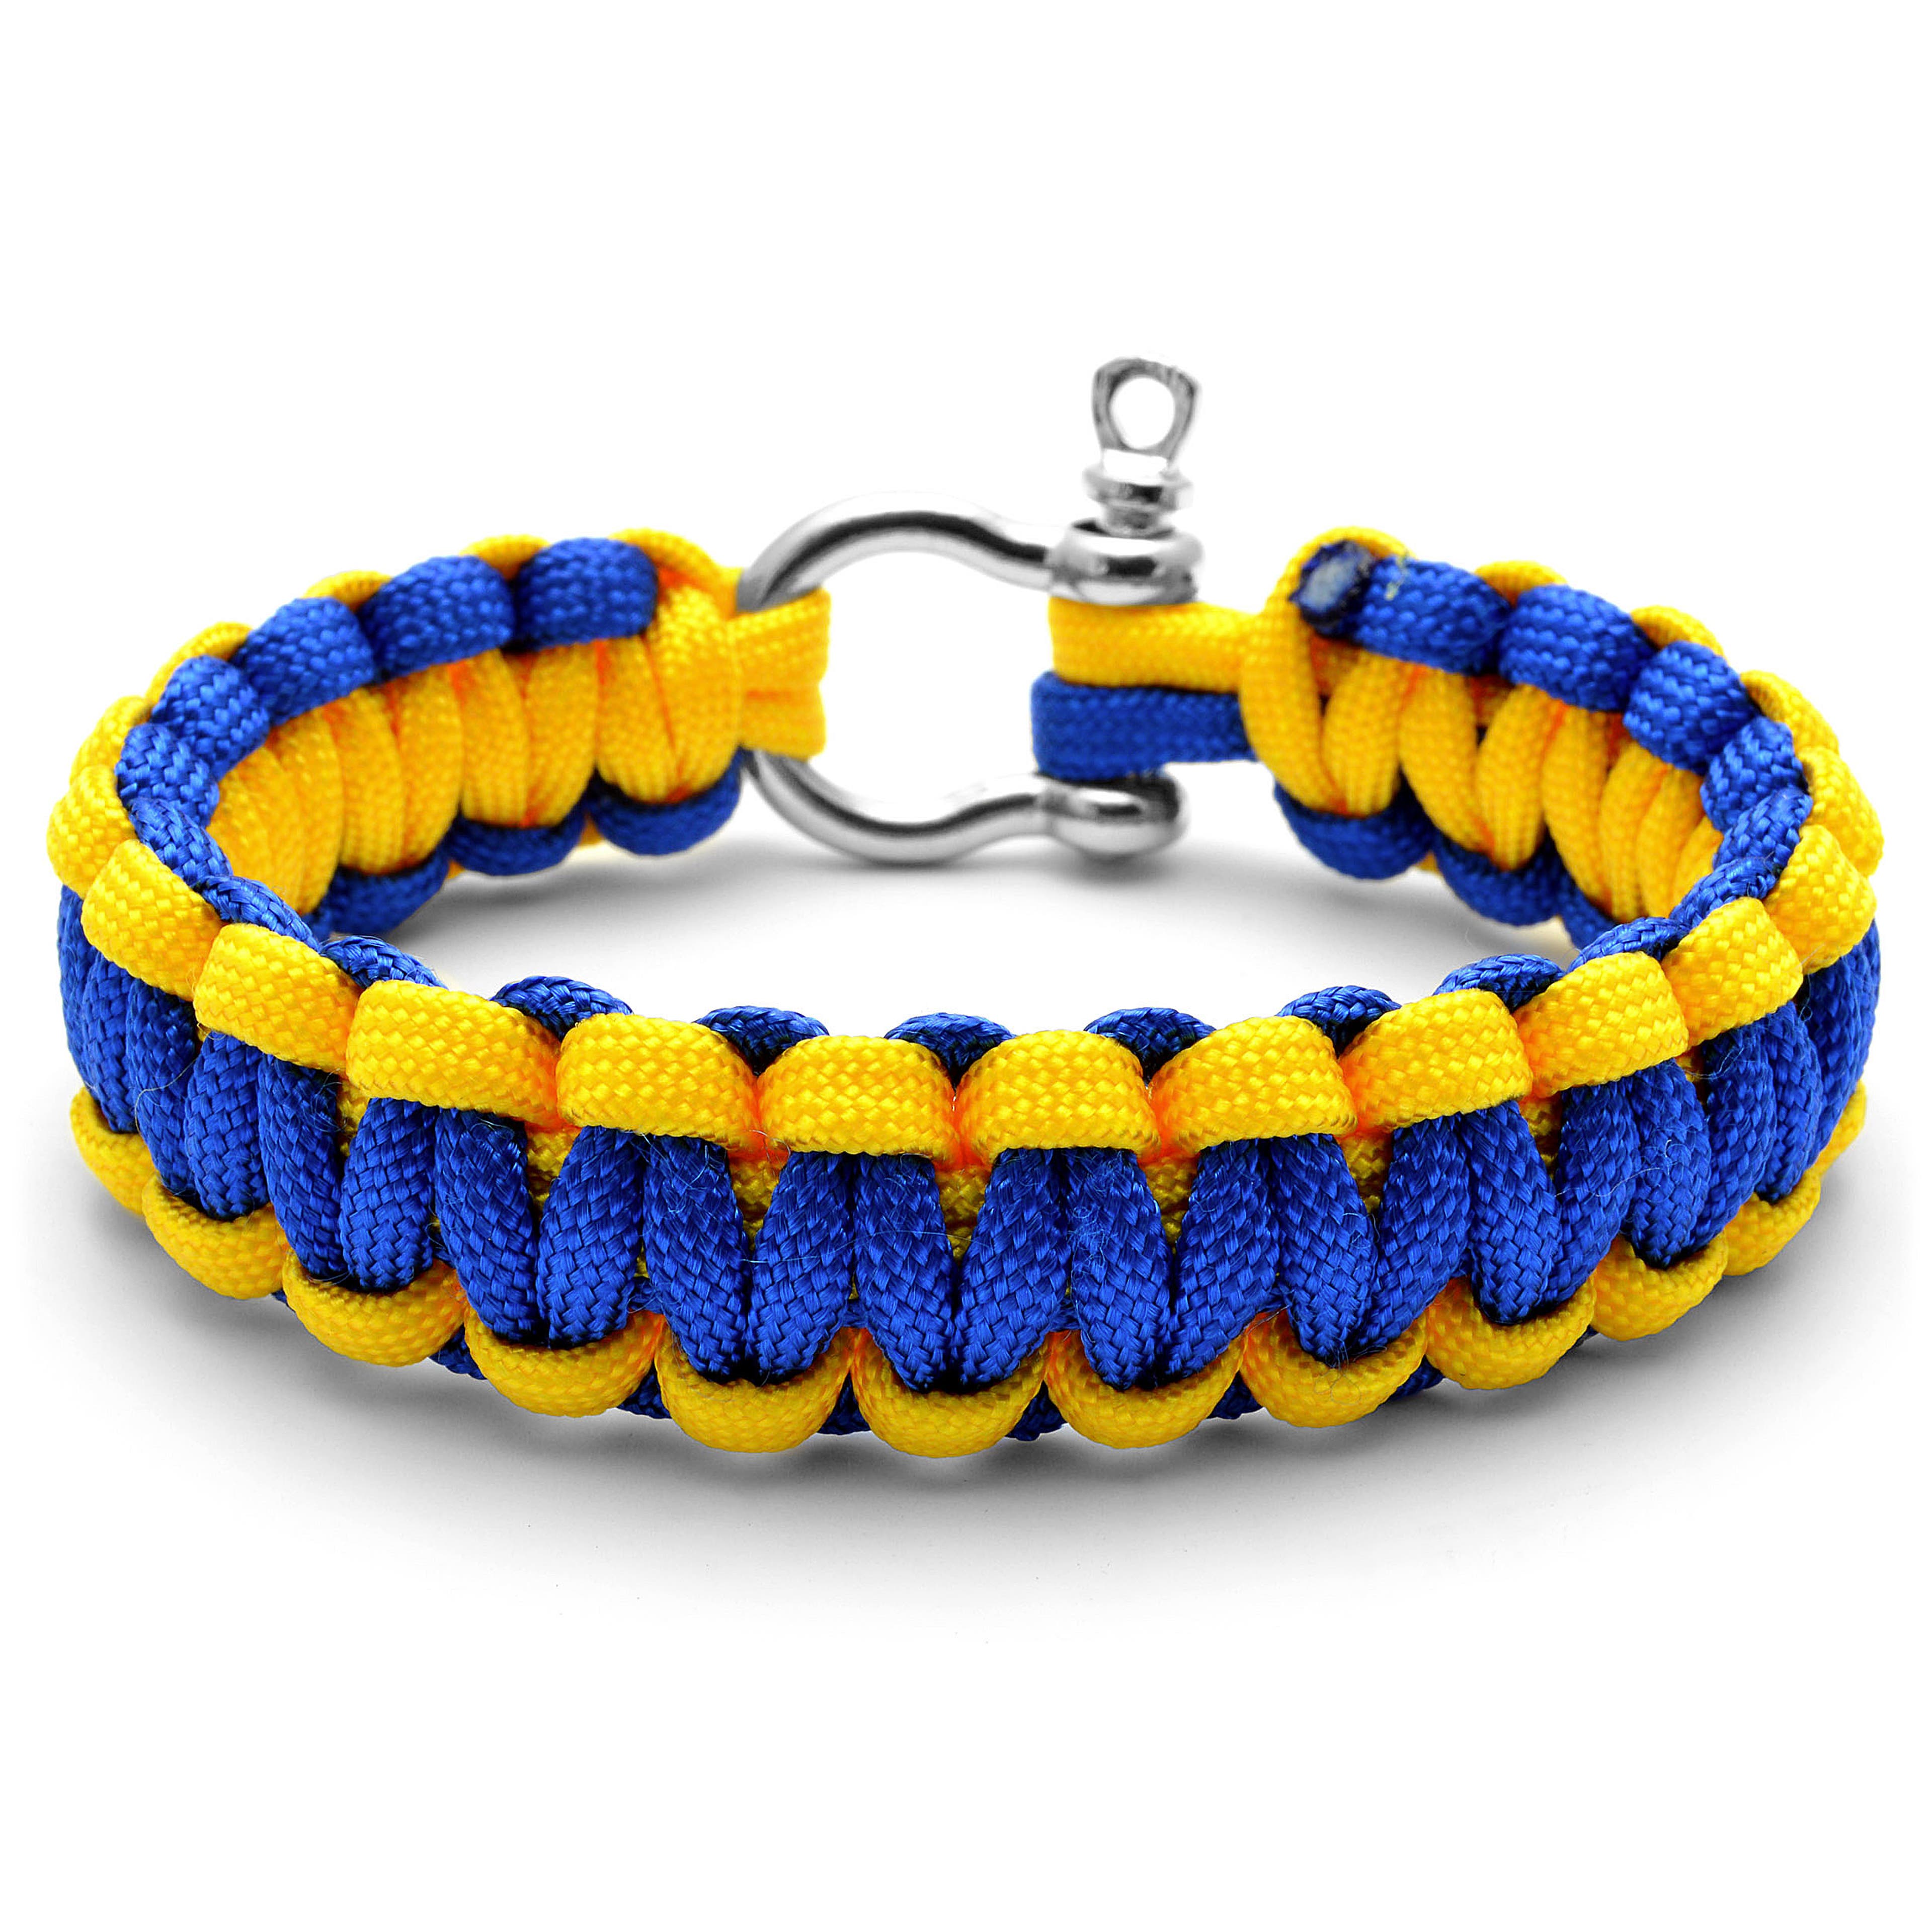 Wide Blue & Yellow Paracord Bracelet